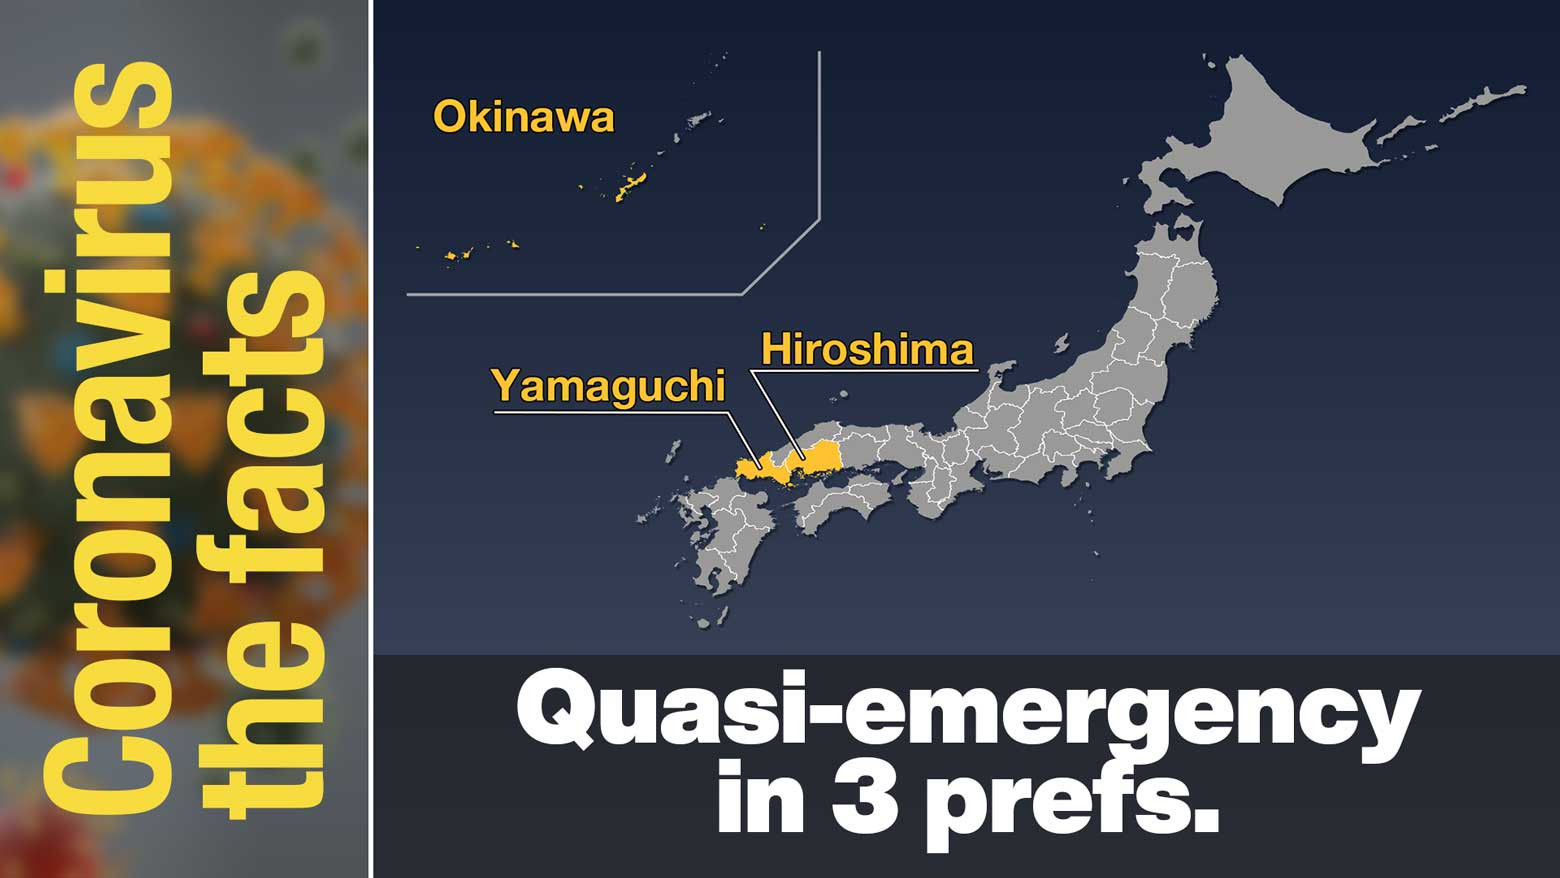 Okinawa, Hiroshima, and parts of Yamaguchi under quasi-emergency